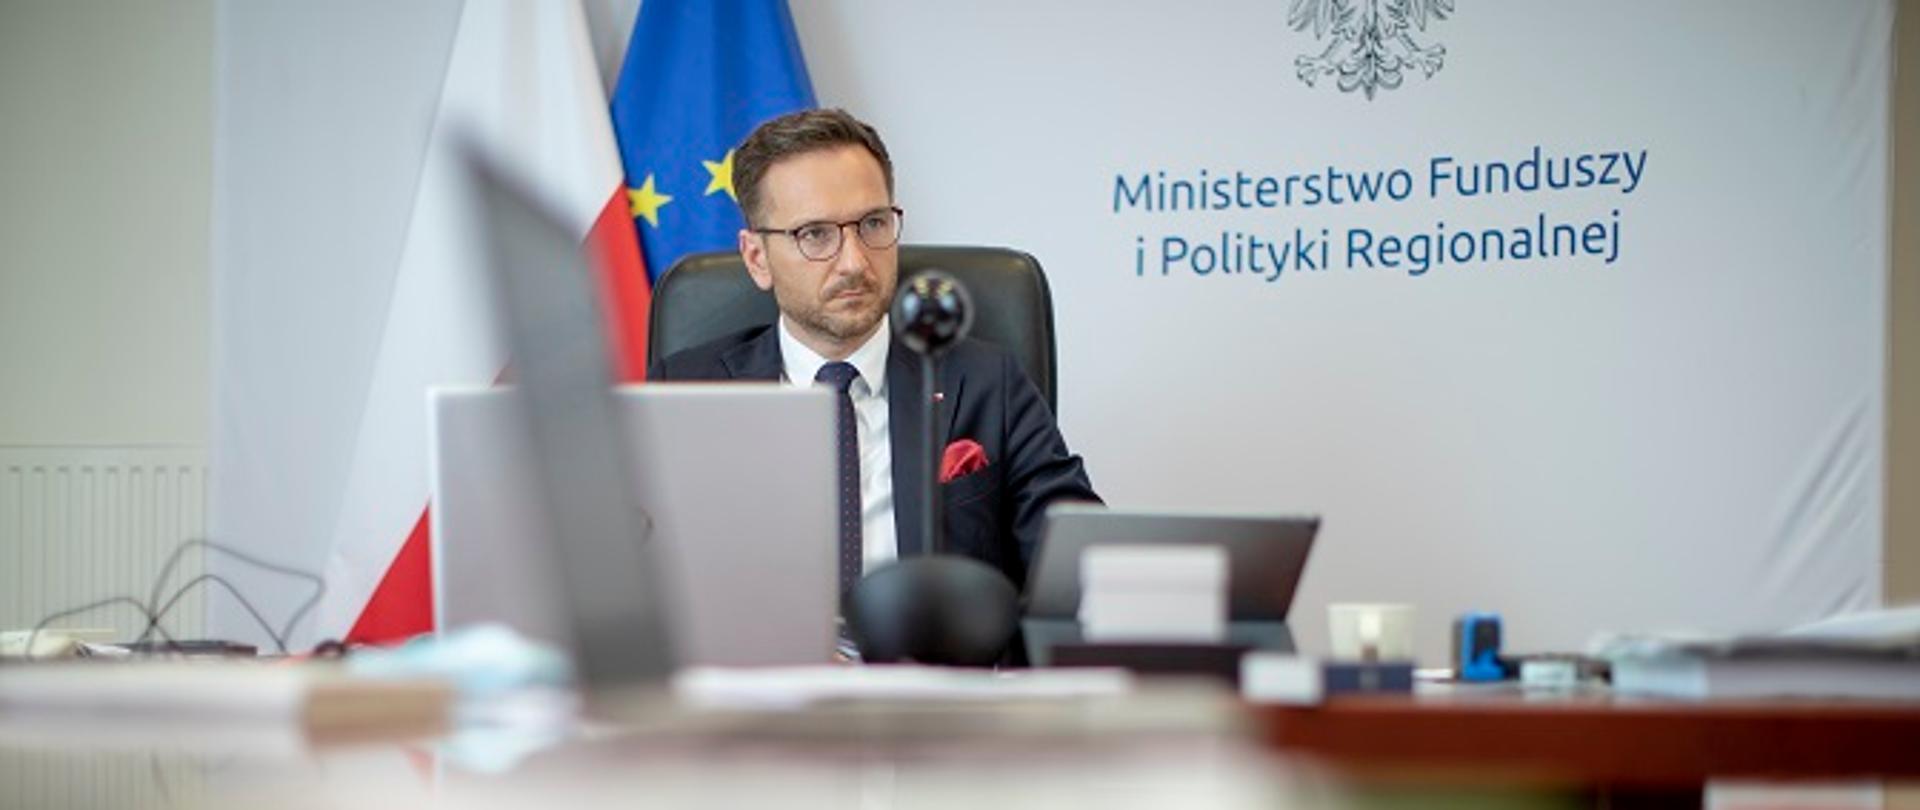 Minister Waldemar Buda siedzi za stołem konferencyjnym, przed nim laptop, w tle ścianka z log MFiPR